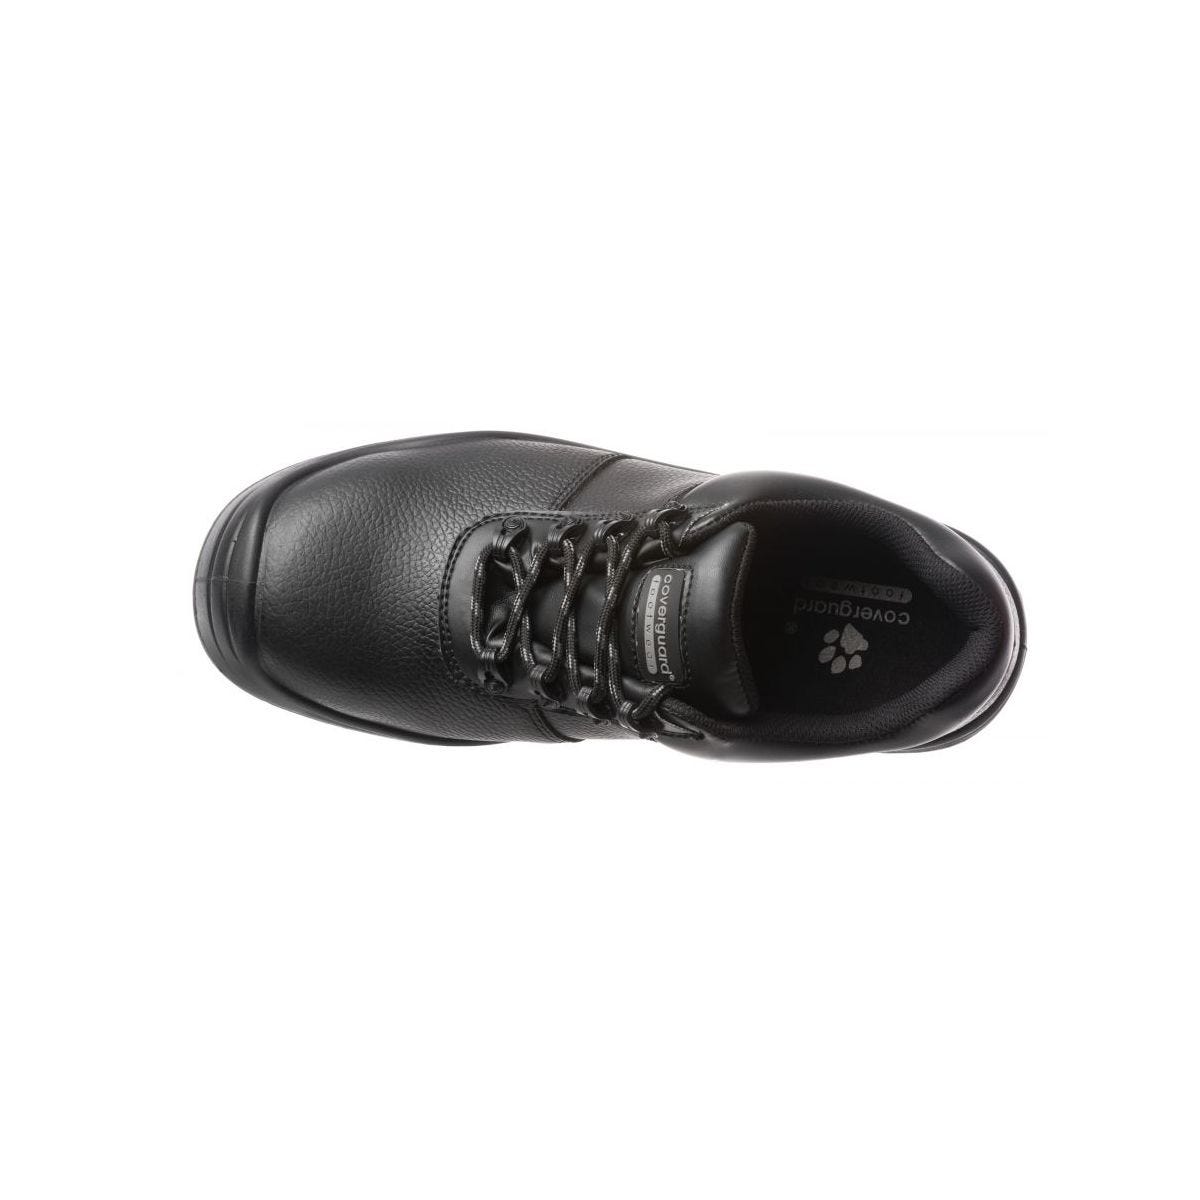 Chaussures de sécurité basses FREEDITE S3 SRC - Coverguard - Taille 44 2